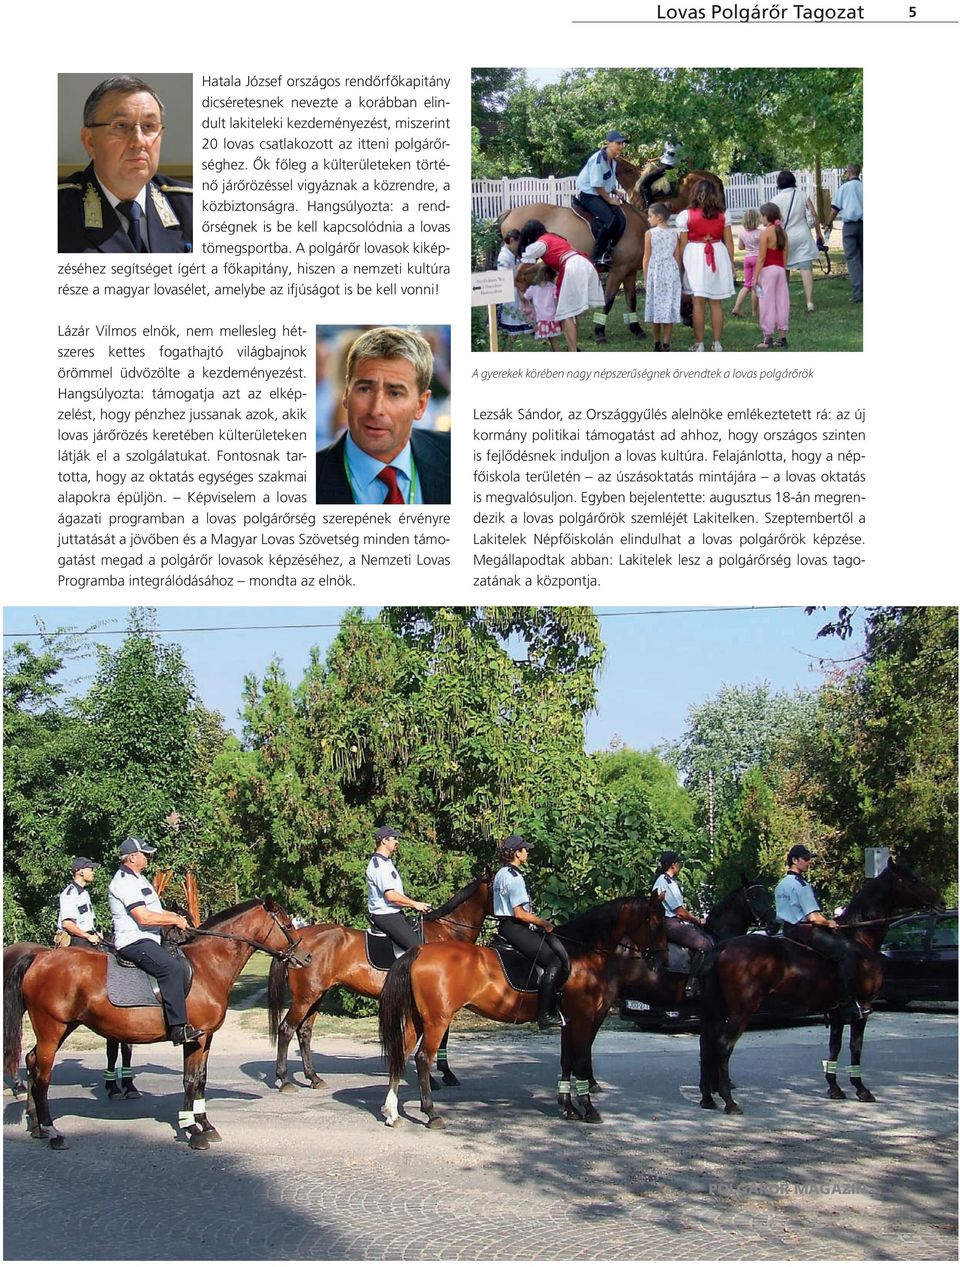 A polgárőr lovasok kiképzéséhez segítséget ígért a főkapitány, hiszen a nemzeti kultúra része a magyar lovasélet, amelybe az ifjúságot is be kell vonni!